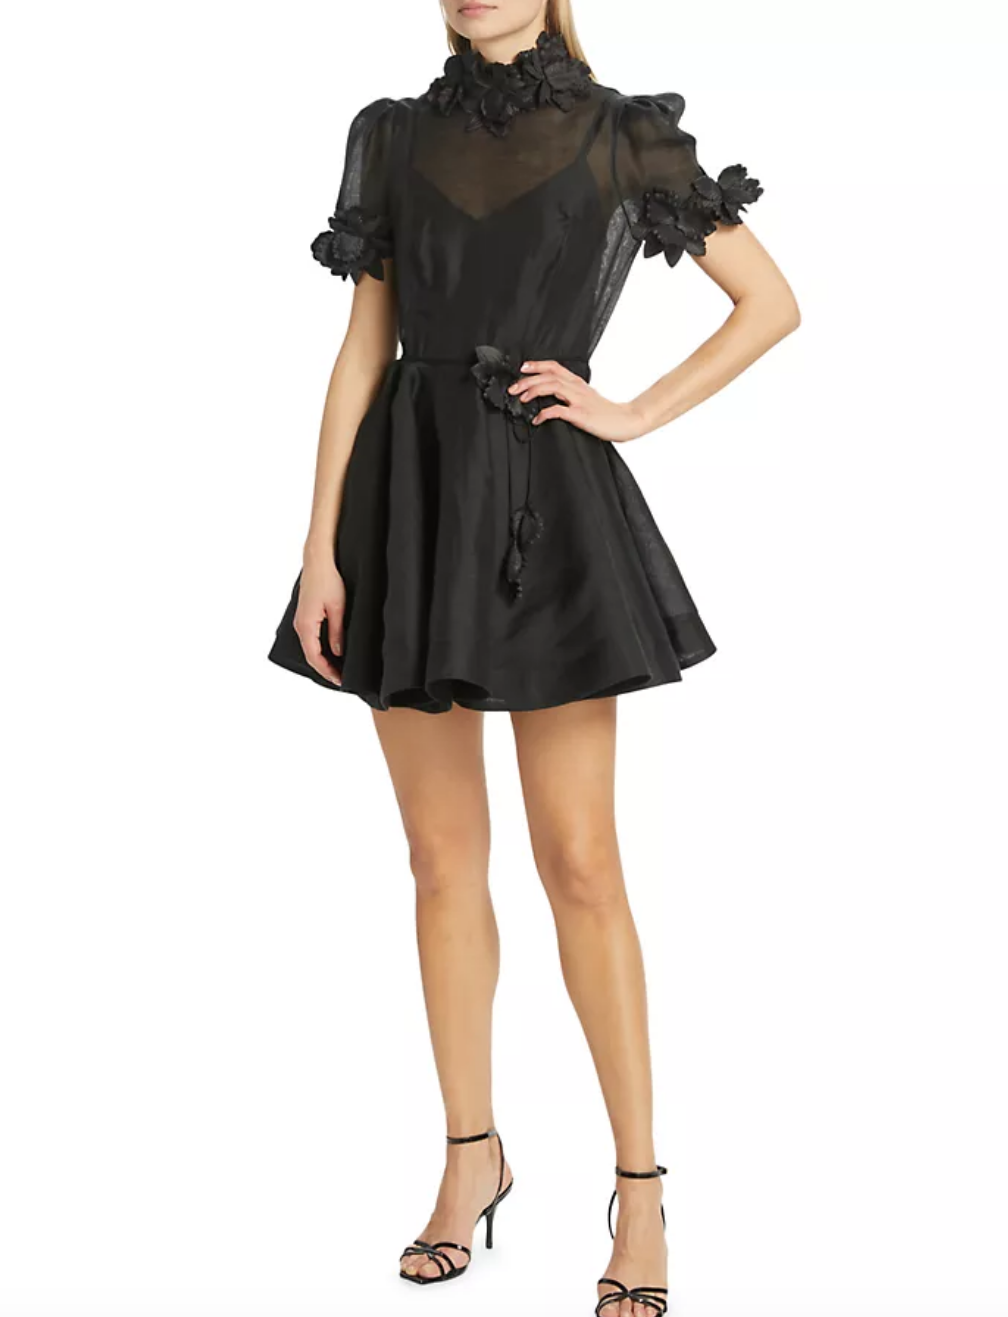 Madison LeCroy's Black Floral Applique Confessional Dress